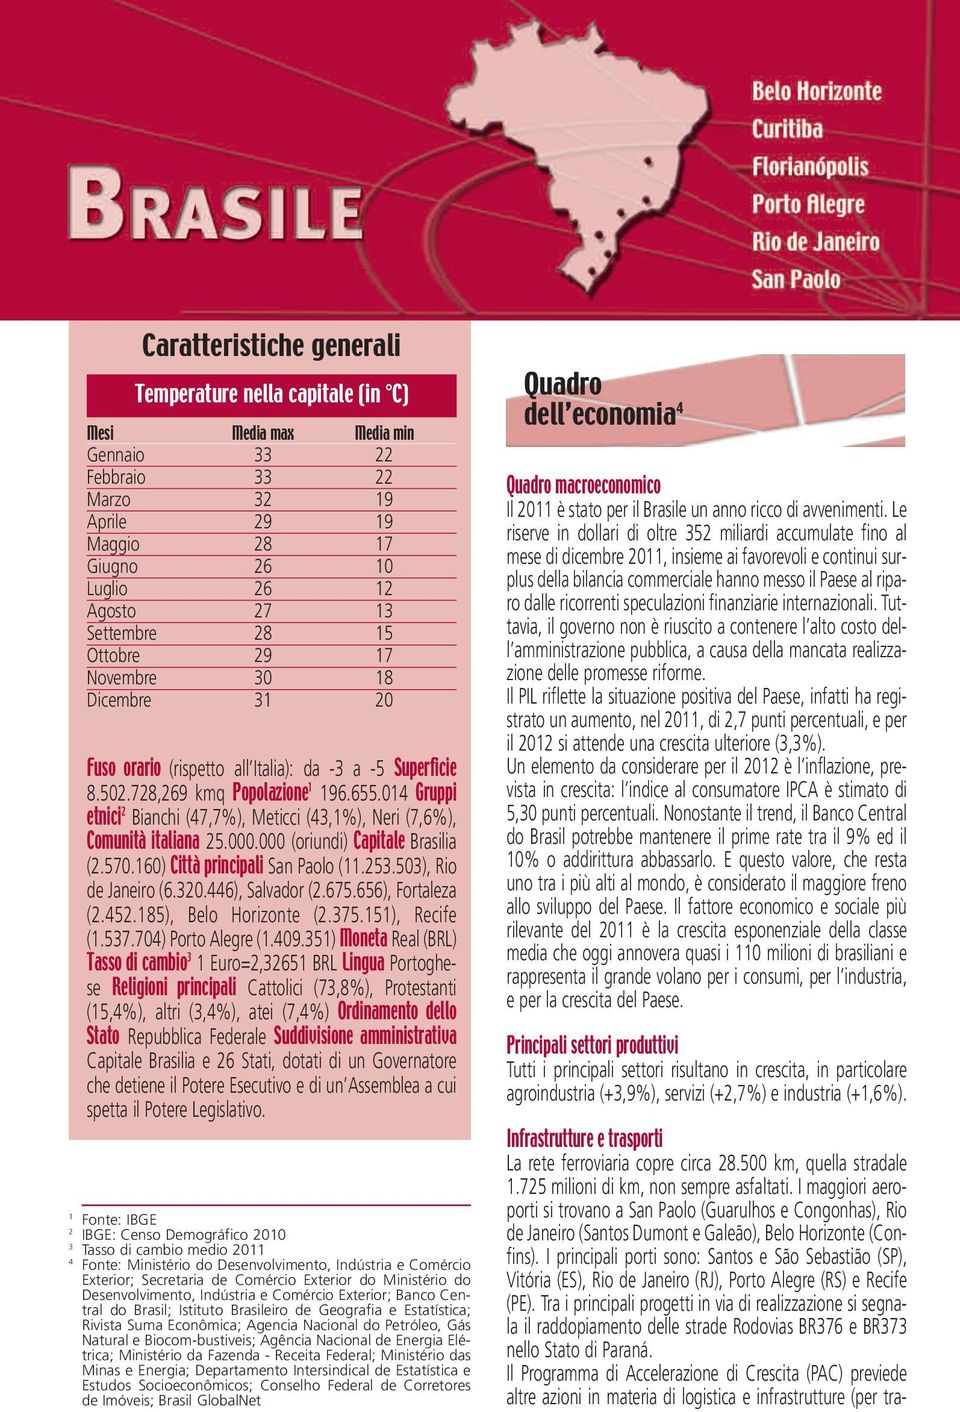 014 Gruppi etnici 2 Bianchi (47,7%), Meticci (43,1%), Neri (7,6%), Comunità italiana 25.000.000 (oriundi) Capitale Brasilia (2.570.160) Città principali San Paolo (11.253.503), Rio de Janeiro (6.320.